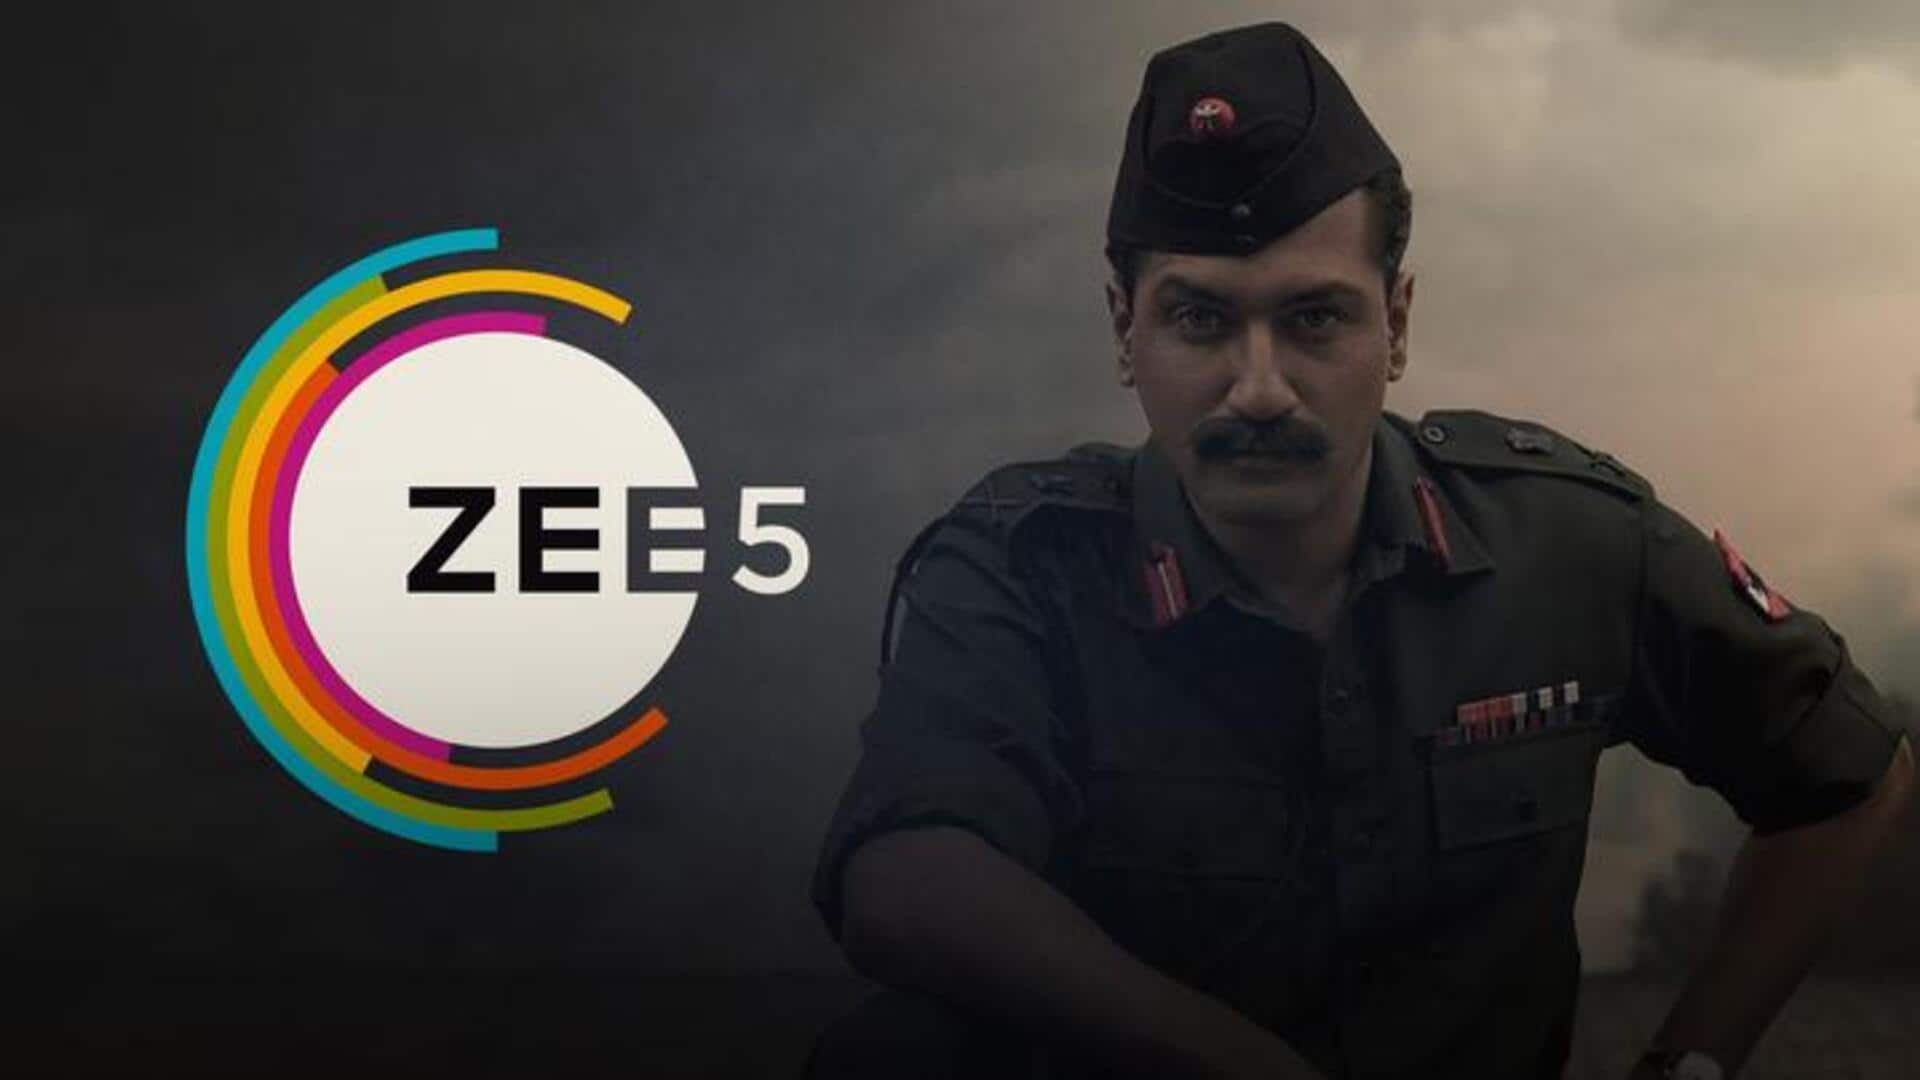 विक्की कौशल की 'सैम बहादुर' का जलवा, बनी ZEE5 पर सबसे ज्यादा देखी जानी वाली फिल्म